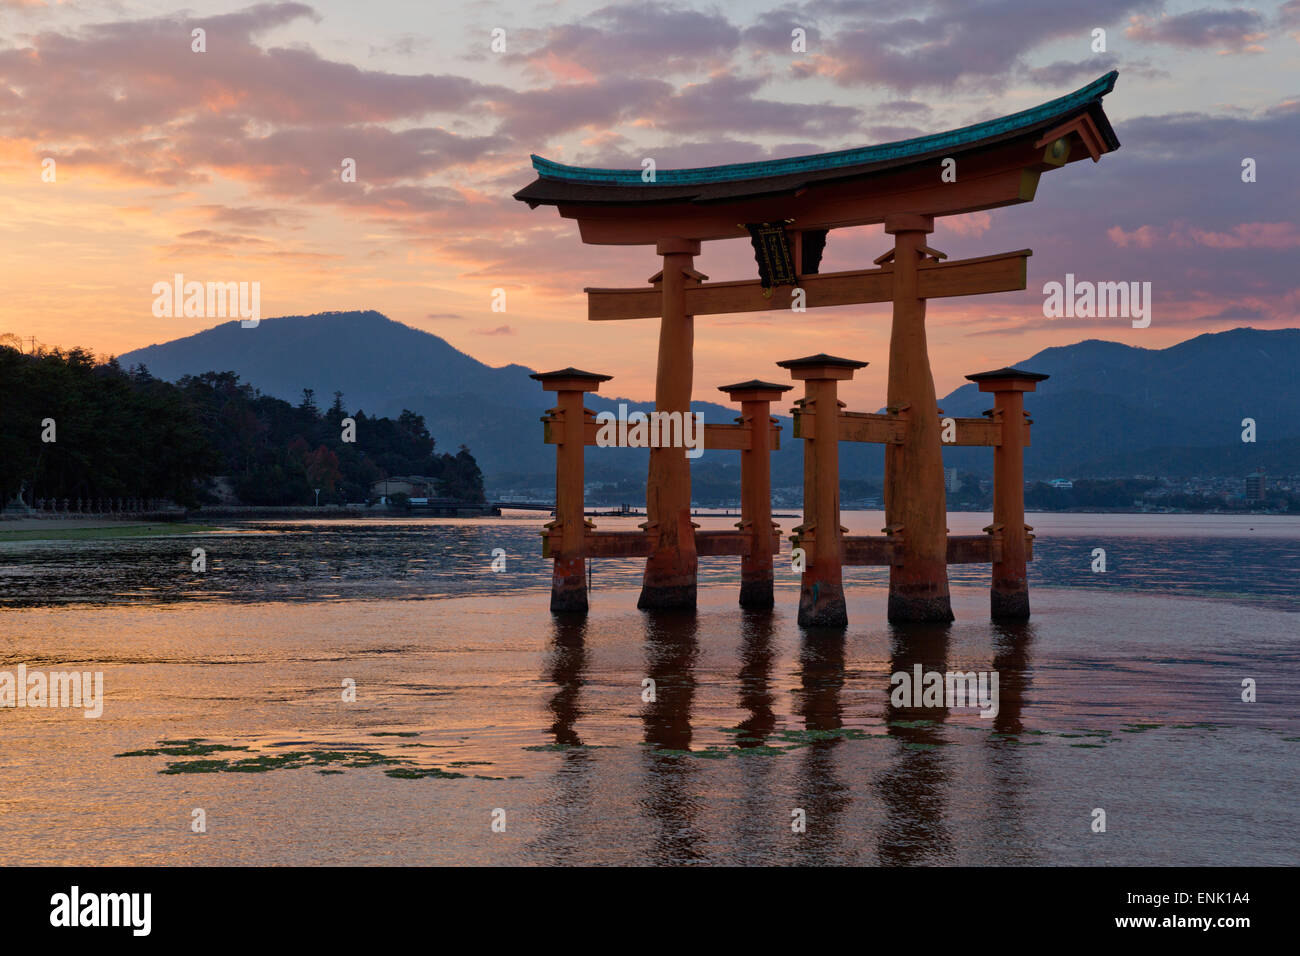 Le Miyajima de torii flottant d'Itsukushima au coucher du soleil, l'UNESCO, l'île de Miyajima, dans l'ouest de Honshu, Japon, Asie Banque D'Images